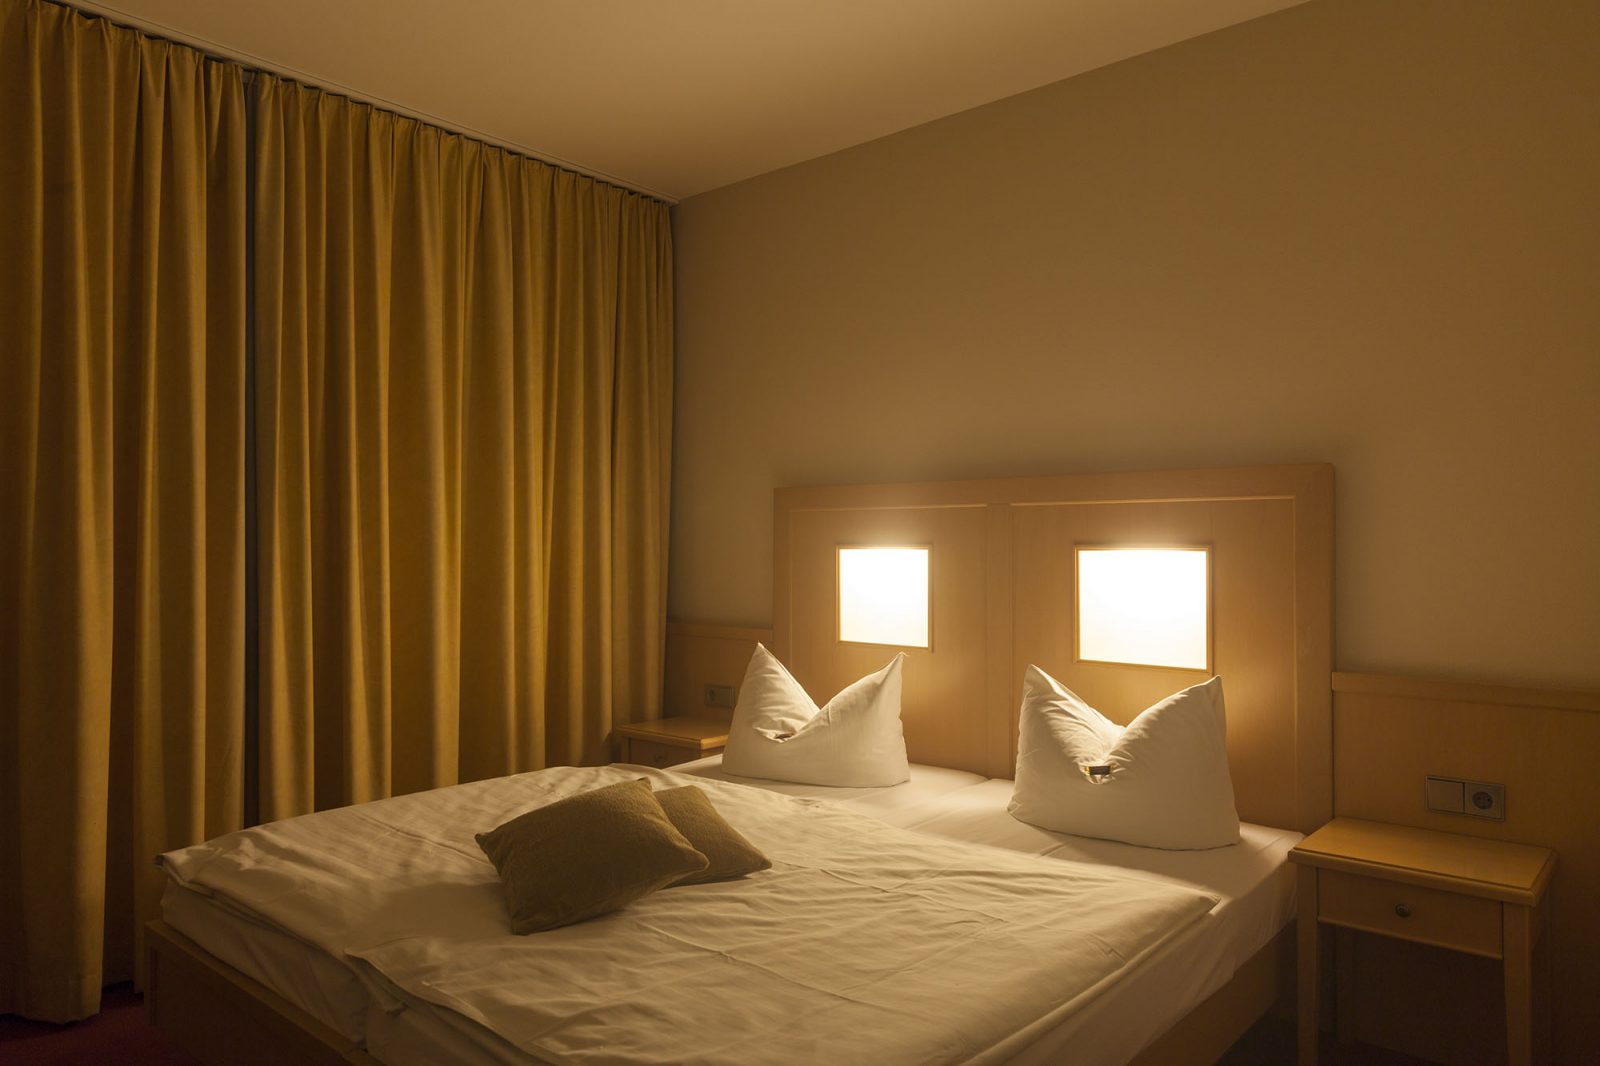 Bett und Einrichtung eines Hotelzimmers.  19.01.2015 Europa, Deutschland, Berlin. Christian O. Bruch / LAIF